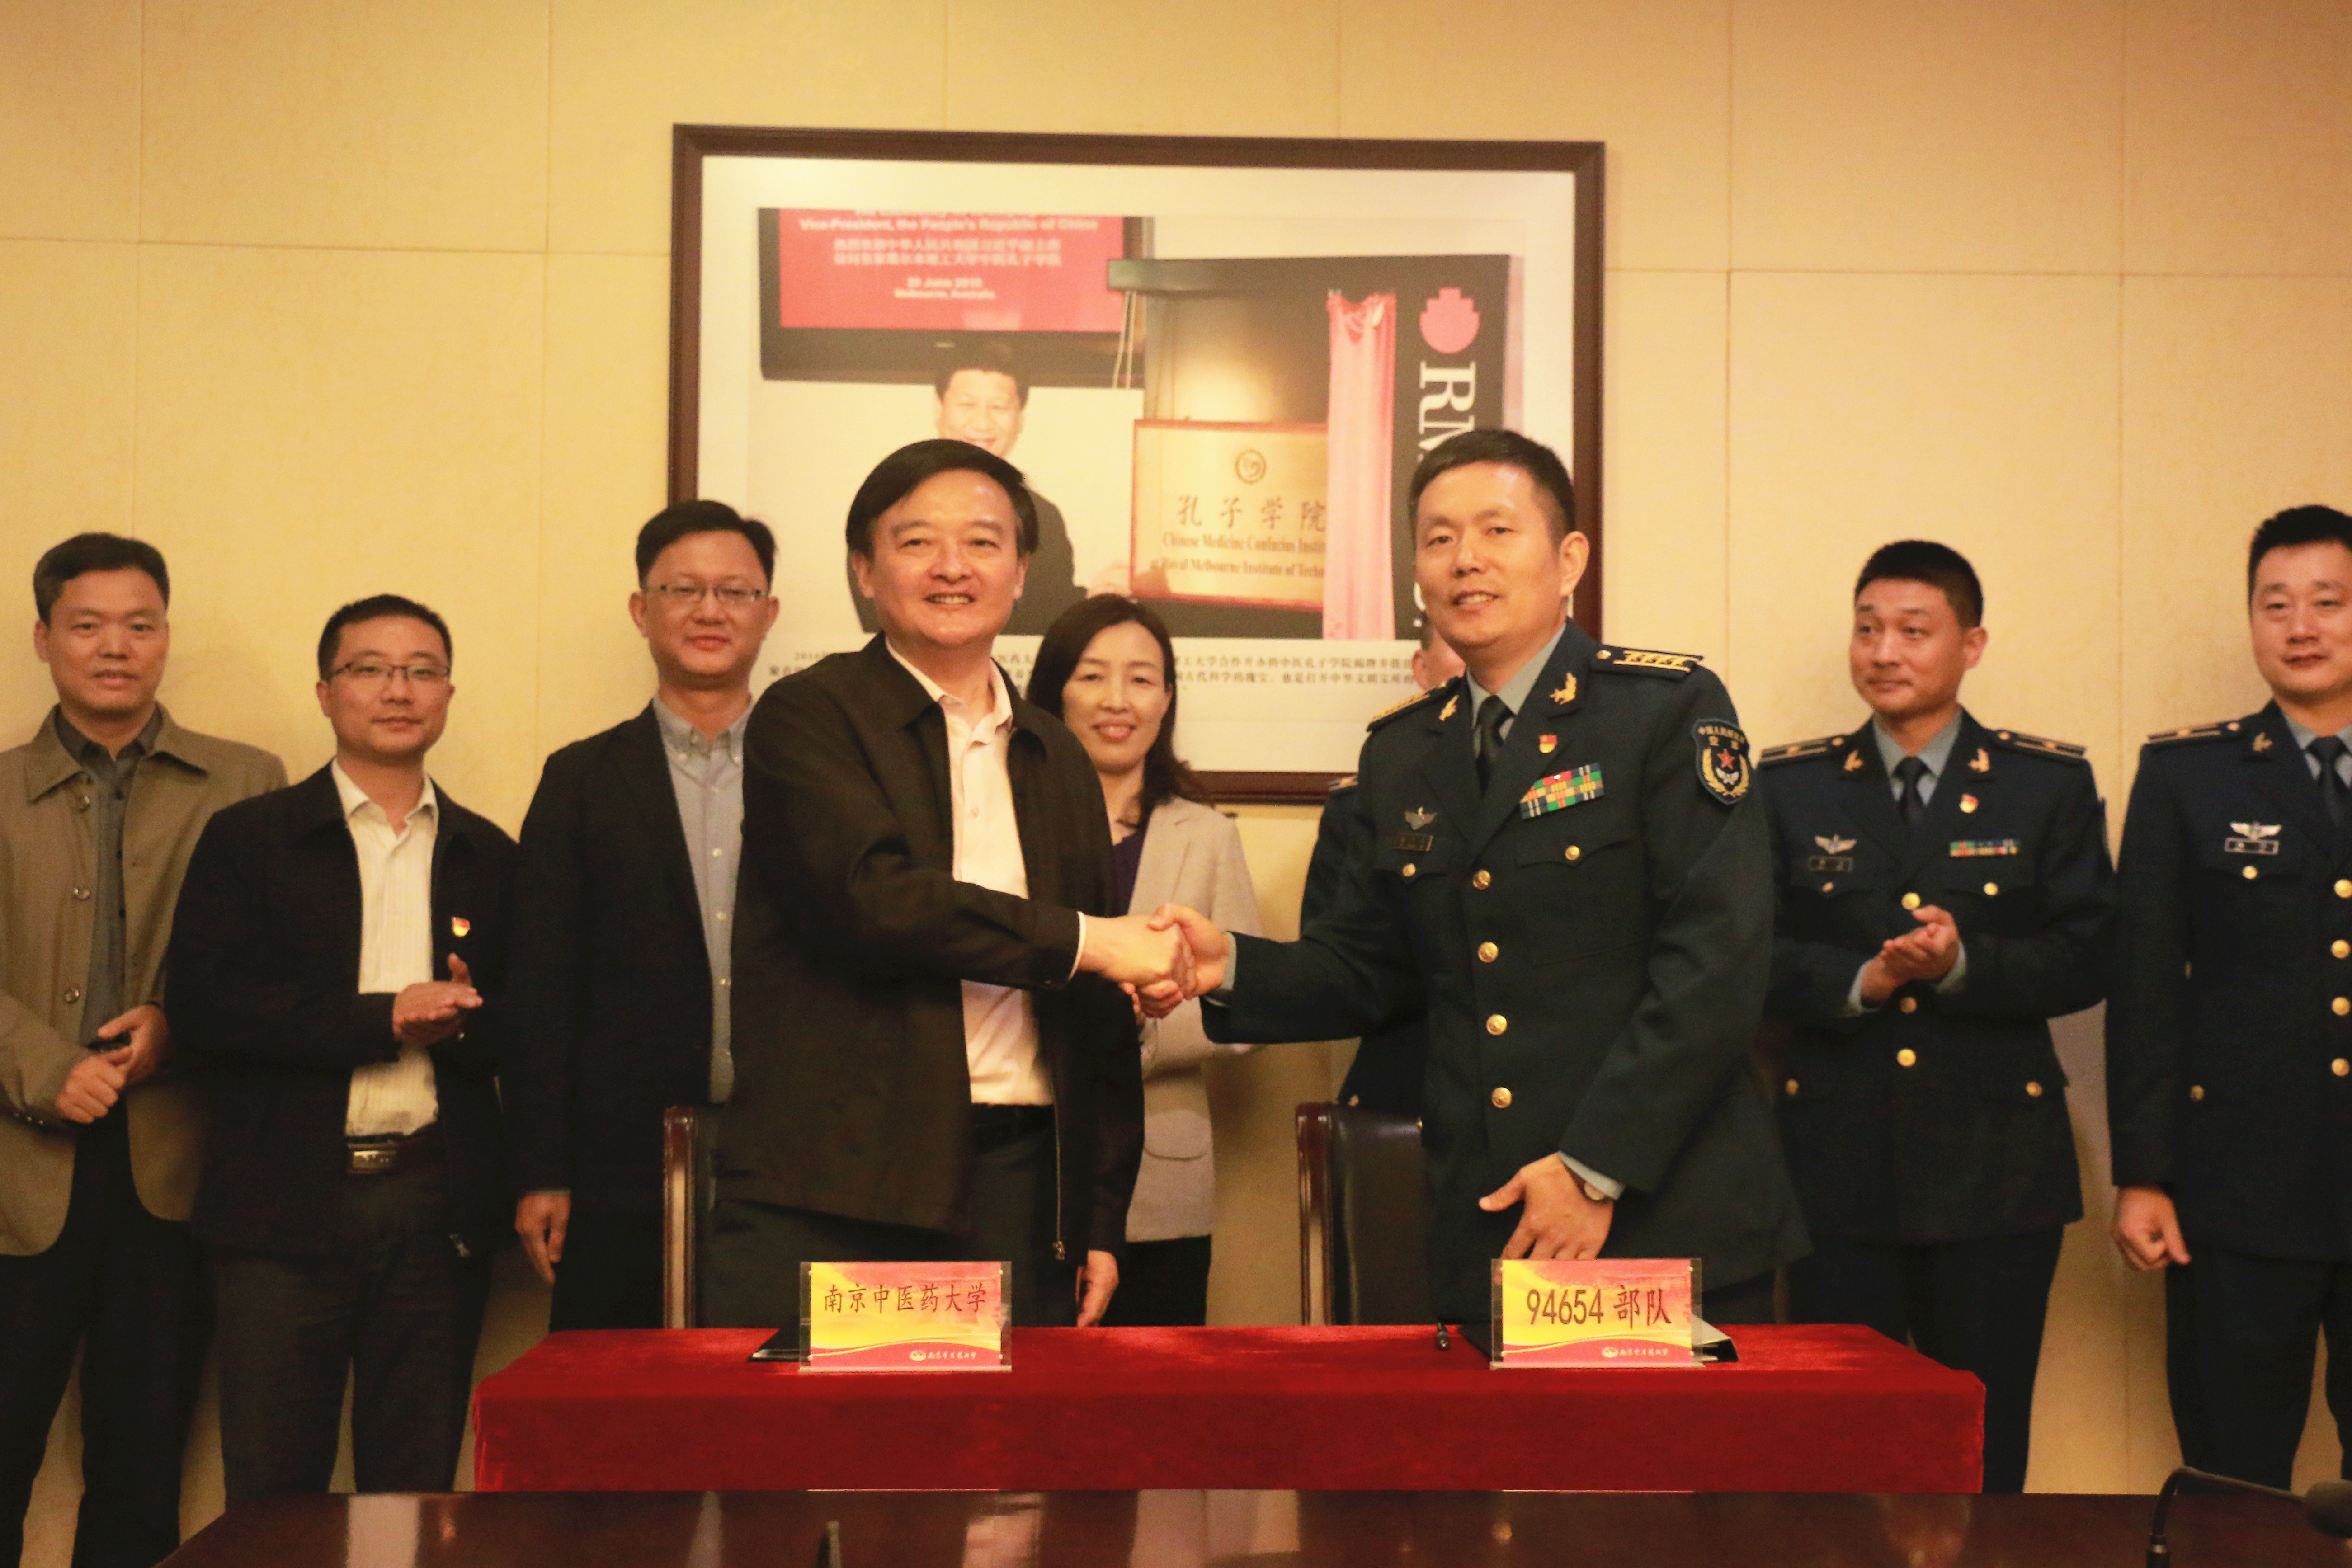 我校与中国人民解放军94654部队举行合作共建签约仪式